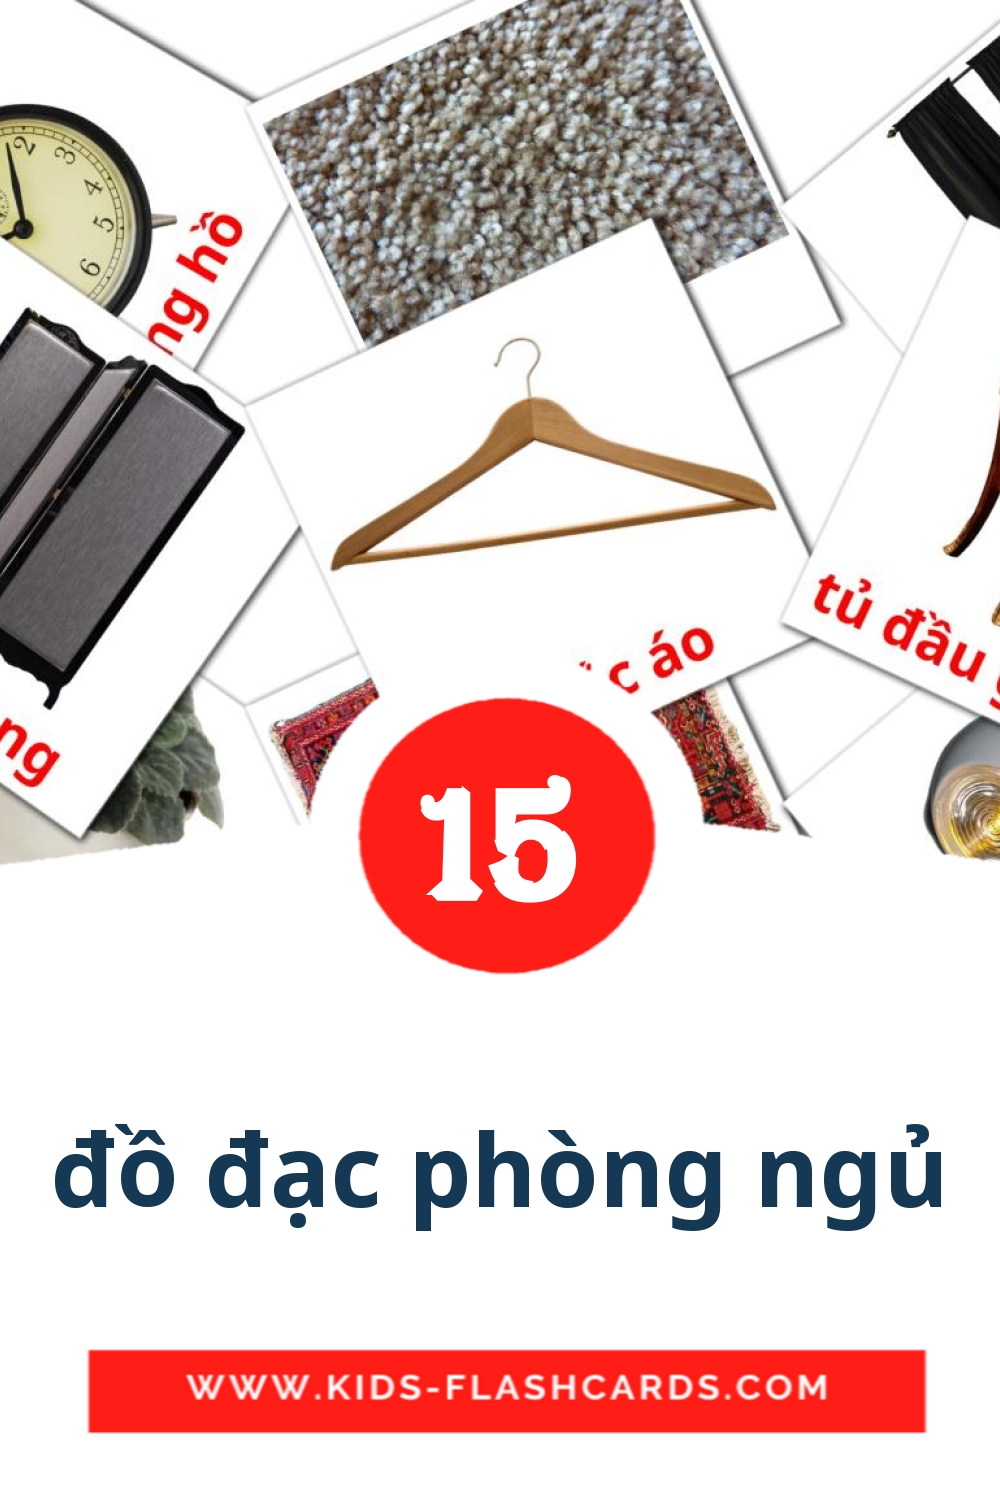 15 Cartões com Imagens de đồ đạc phòng ngủ para Jardim de Infância em vietnamita